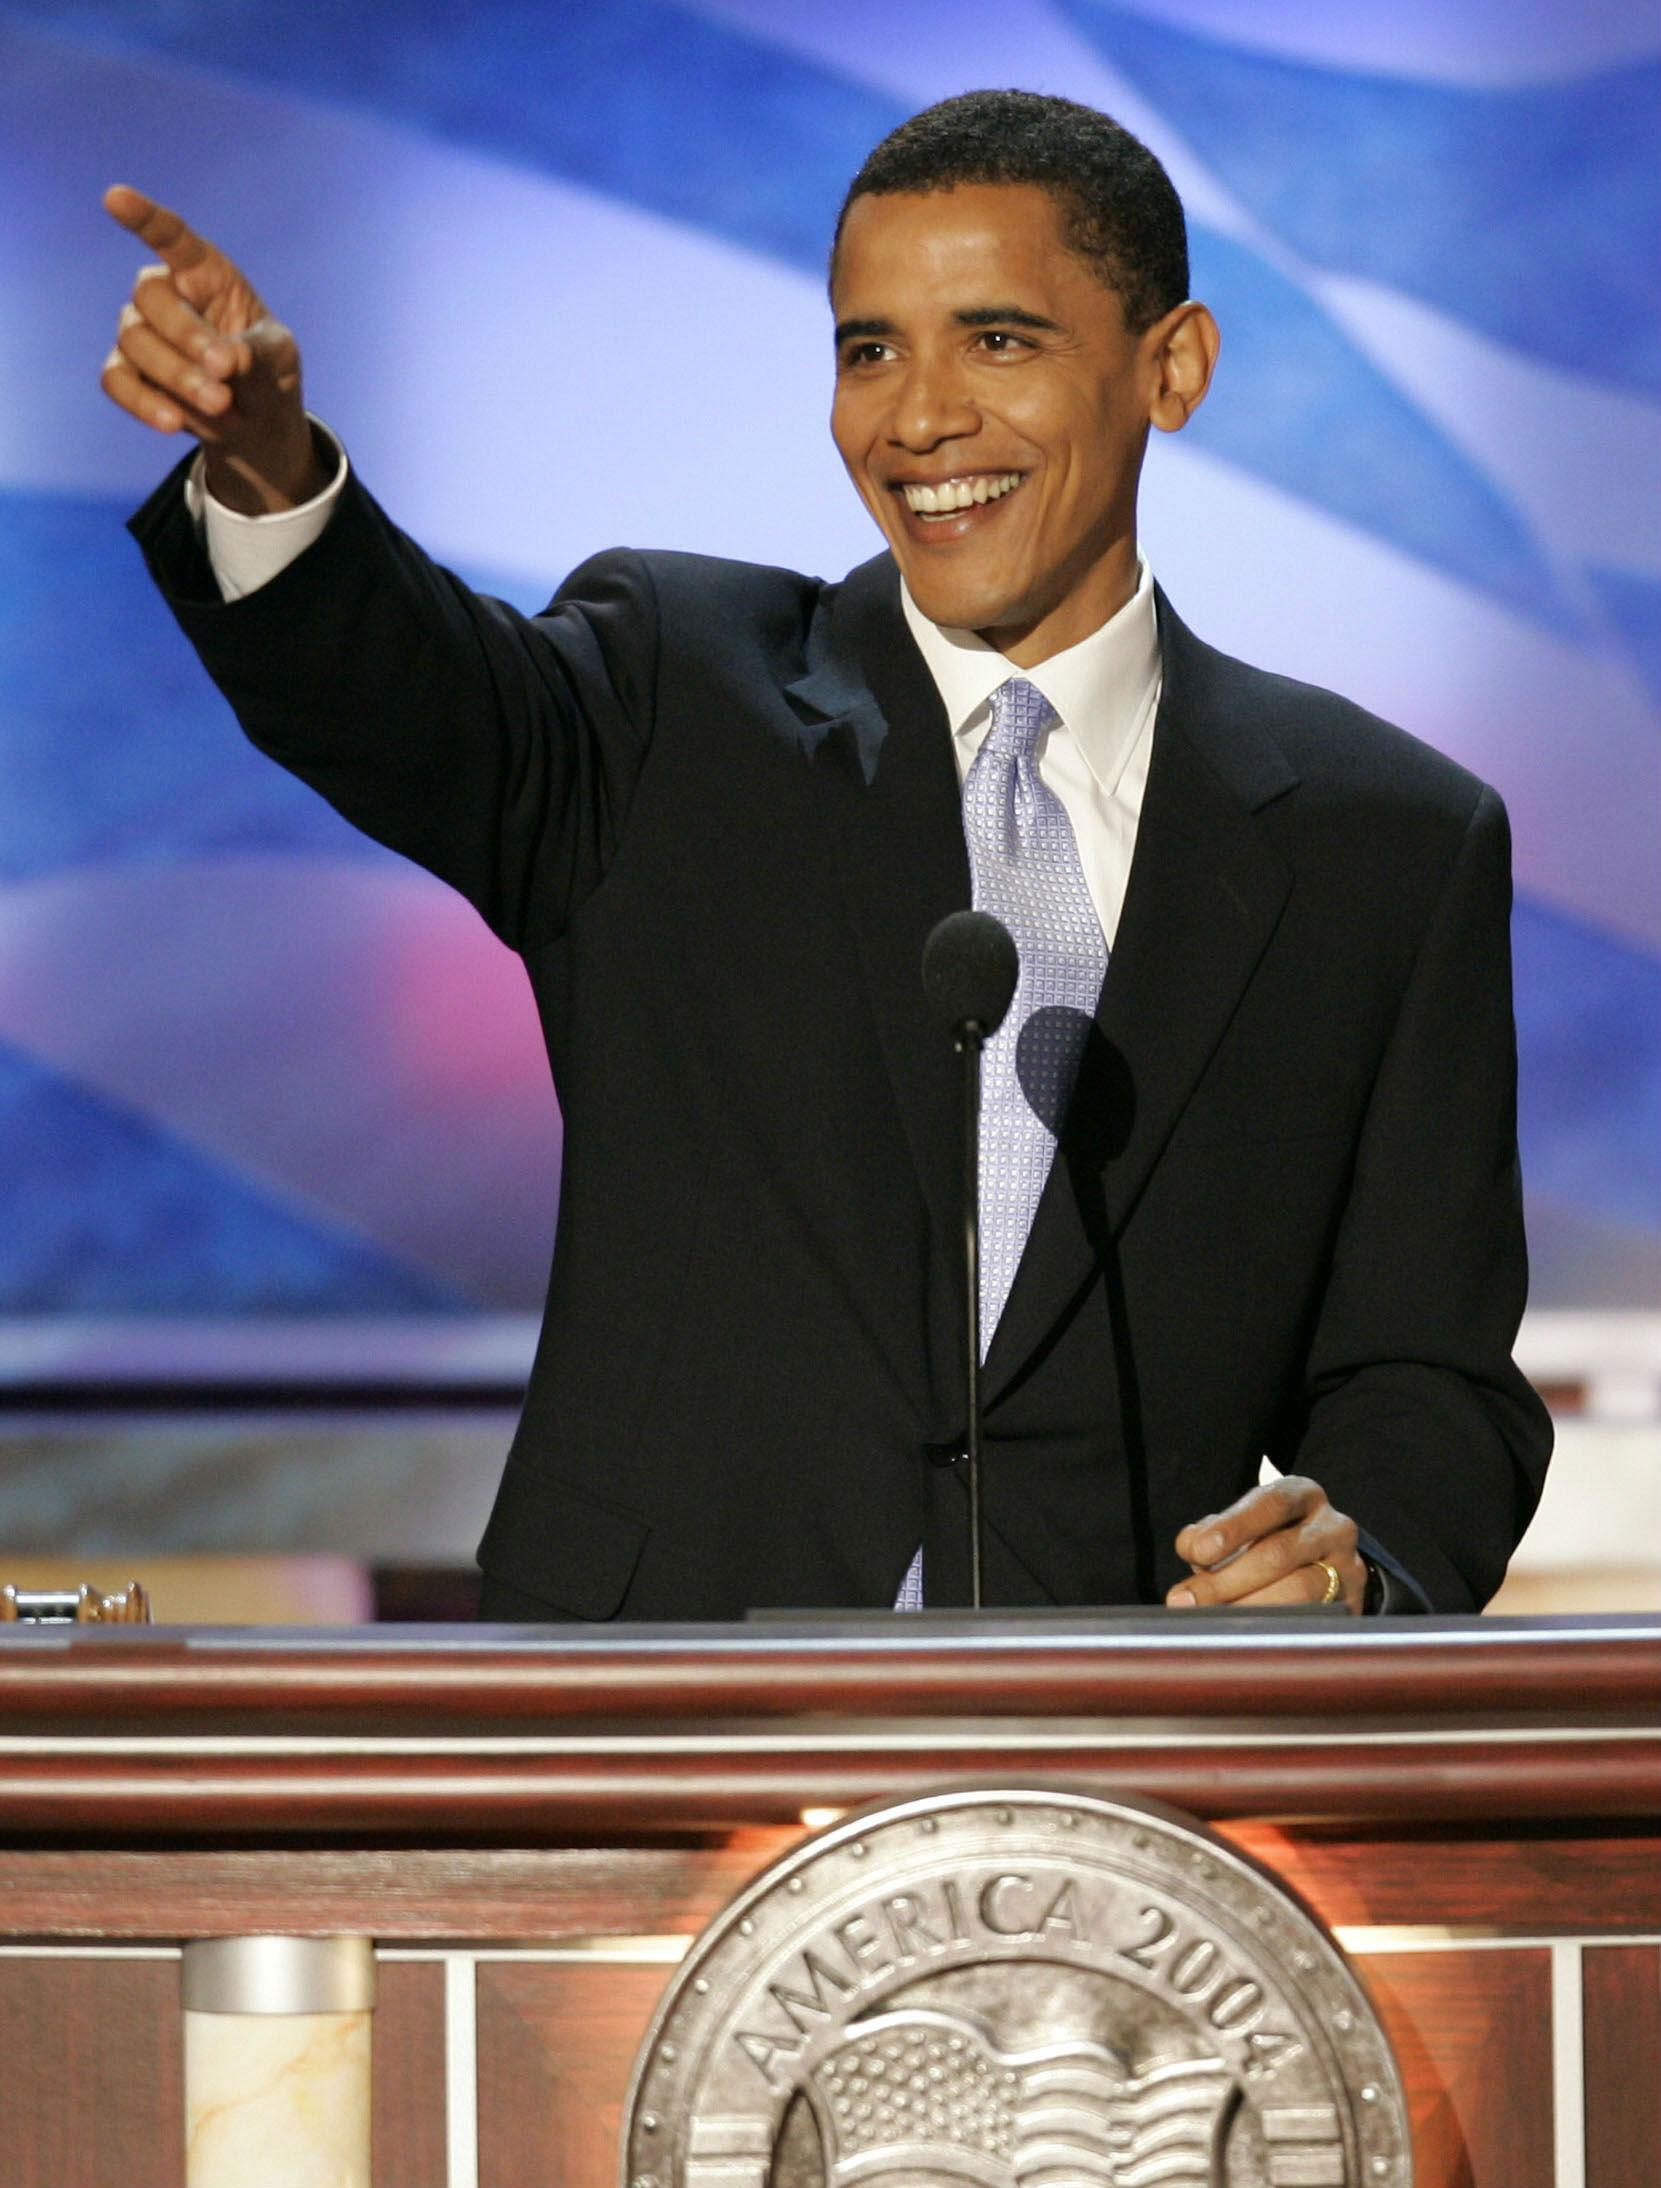 Barack Obama delivering his keynote speech in Boston, 2004